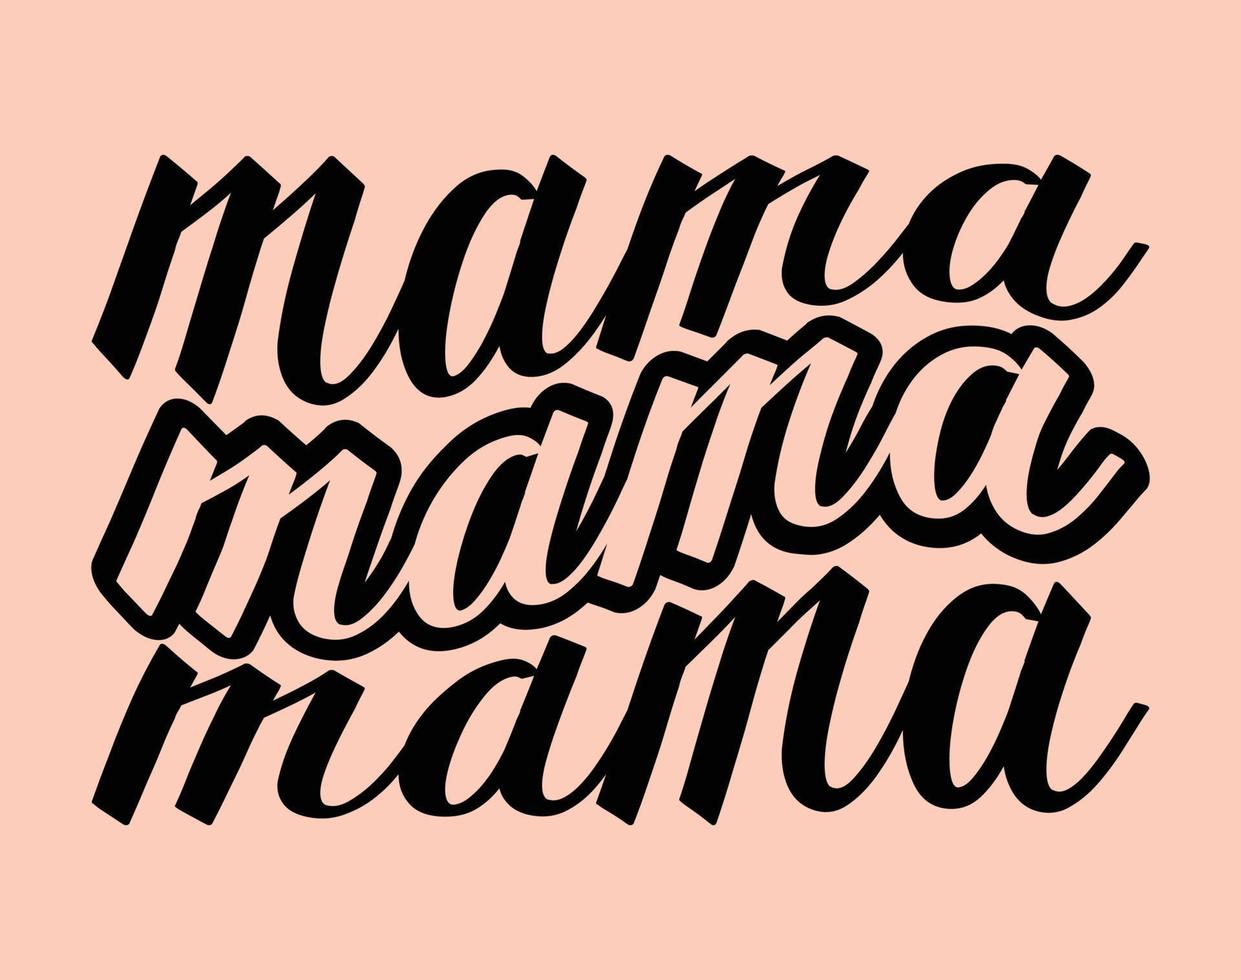 mamma, typografi t-shirt vektor konst för mors dag, mamma, mamma, svg, typografi t skjorta design